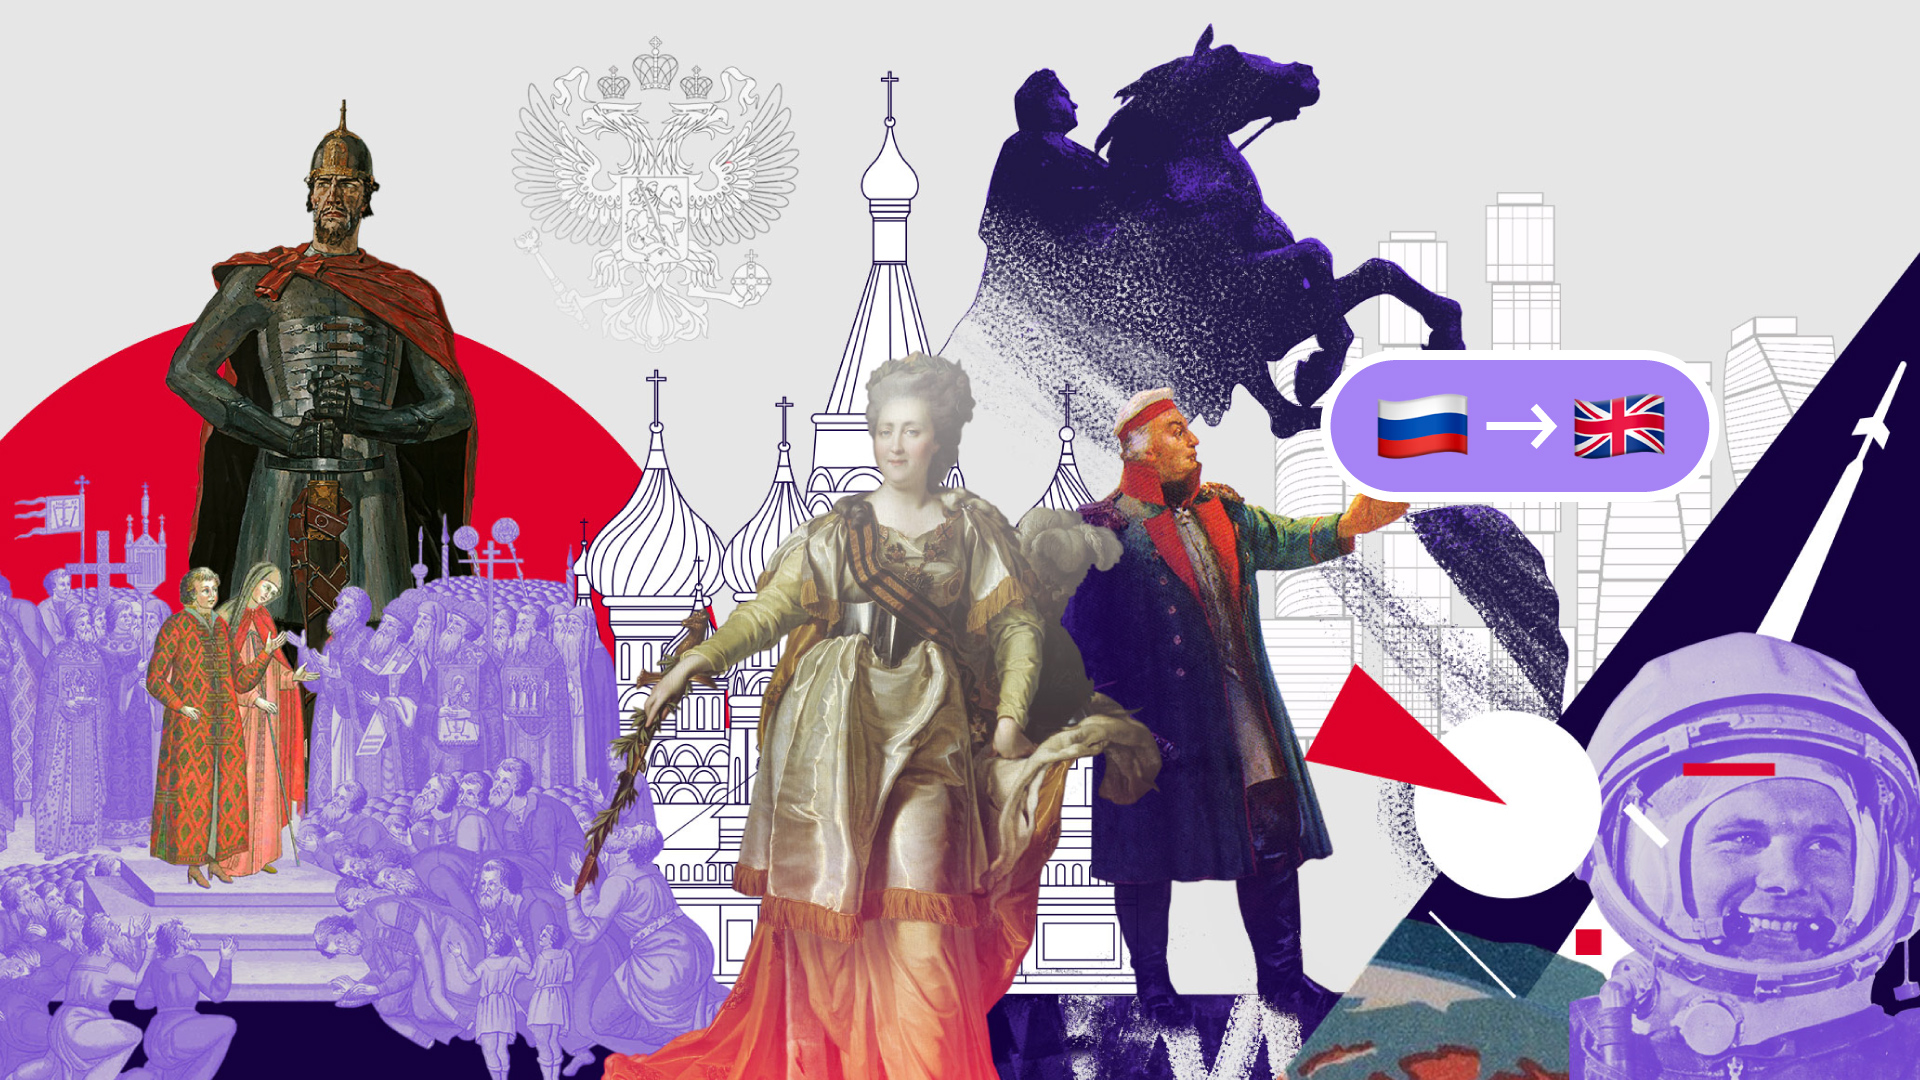 Проект великая история россии